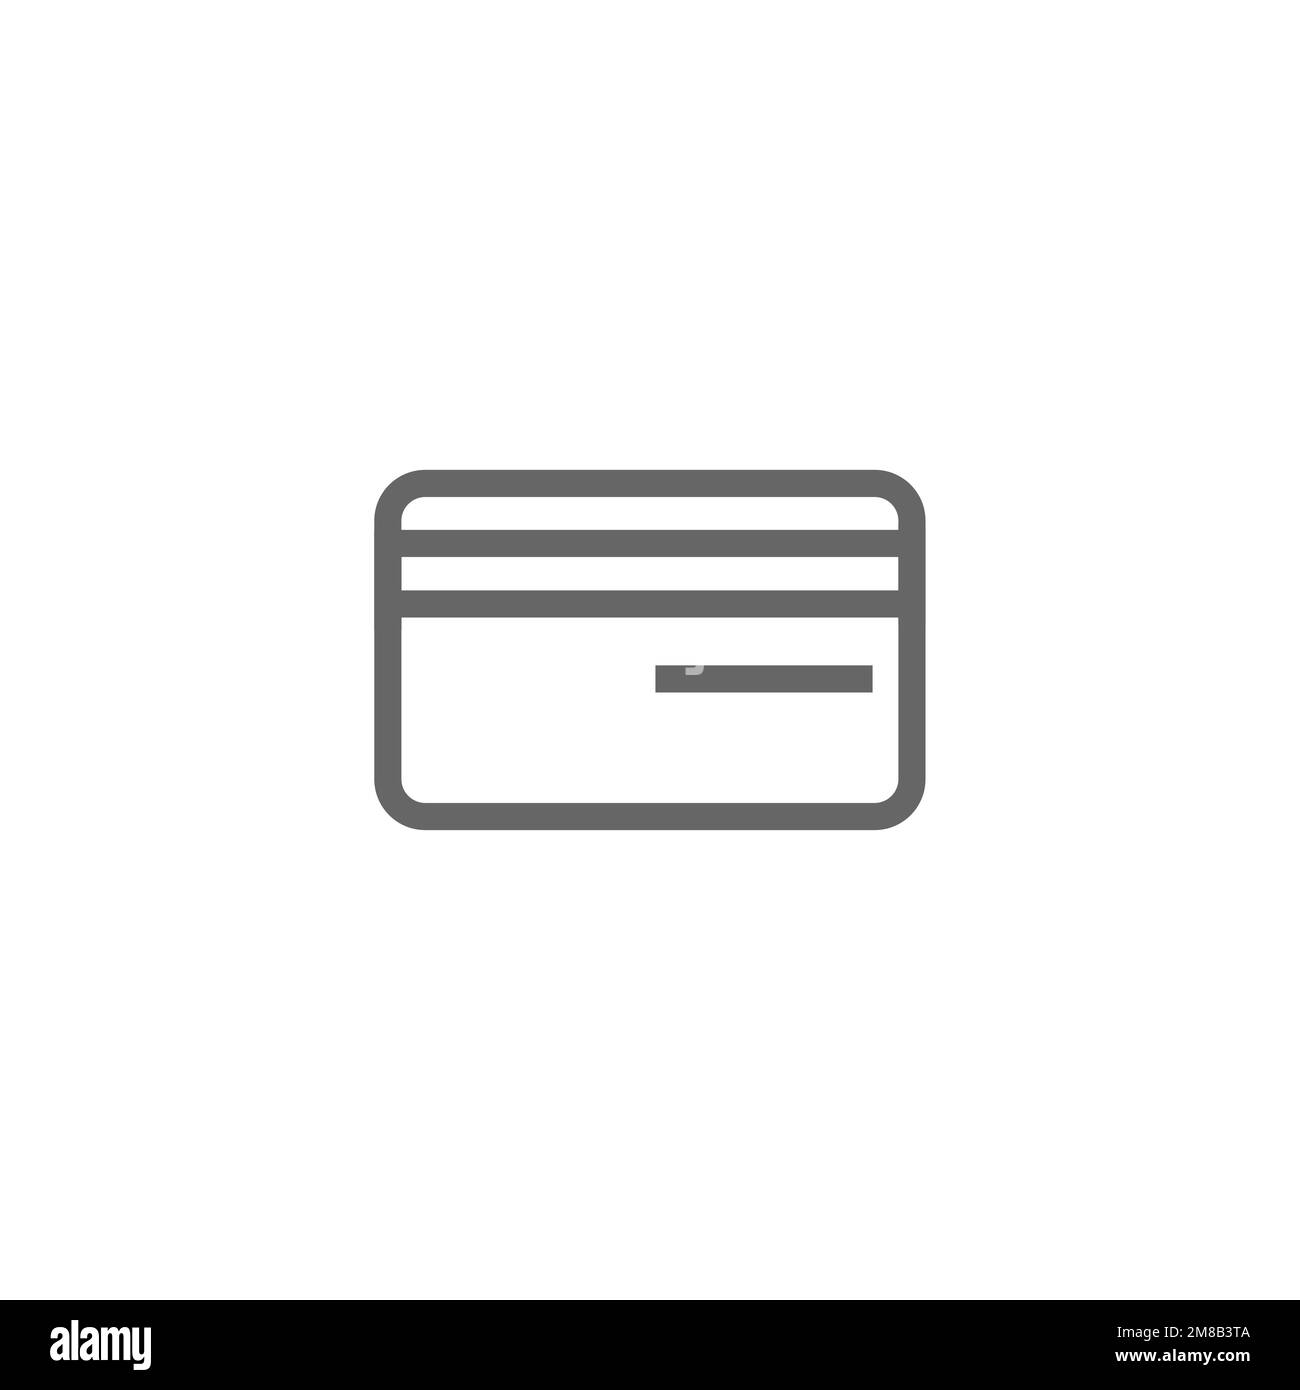 Icona della carta di credito, mockup delle risorse grafiche della carta di debito, illustrazione vettoriale. Illustrazione Vettoriale